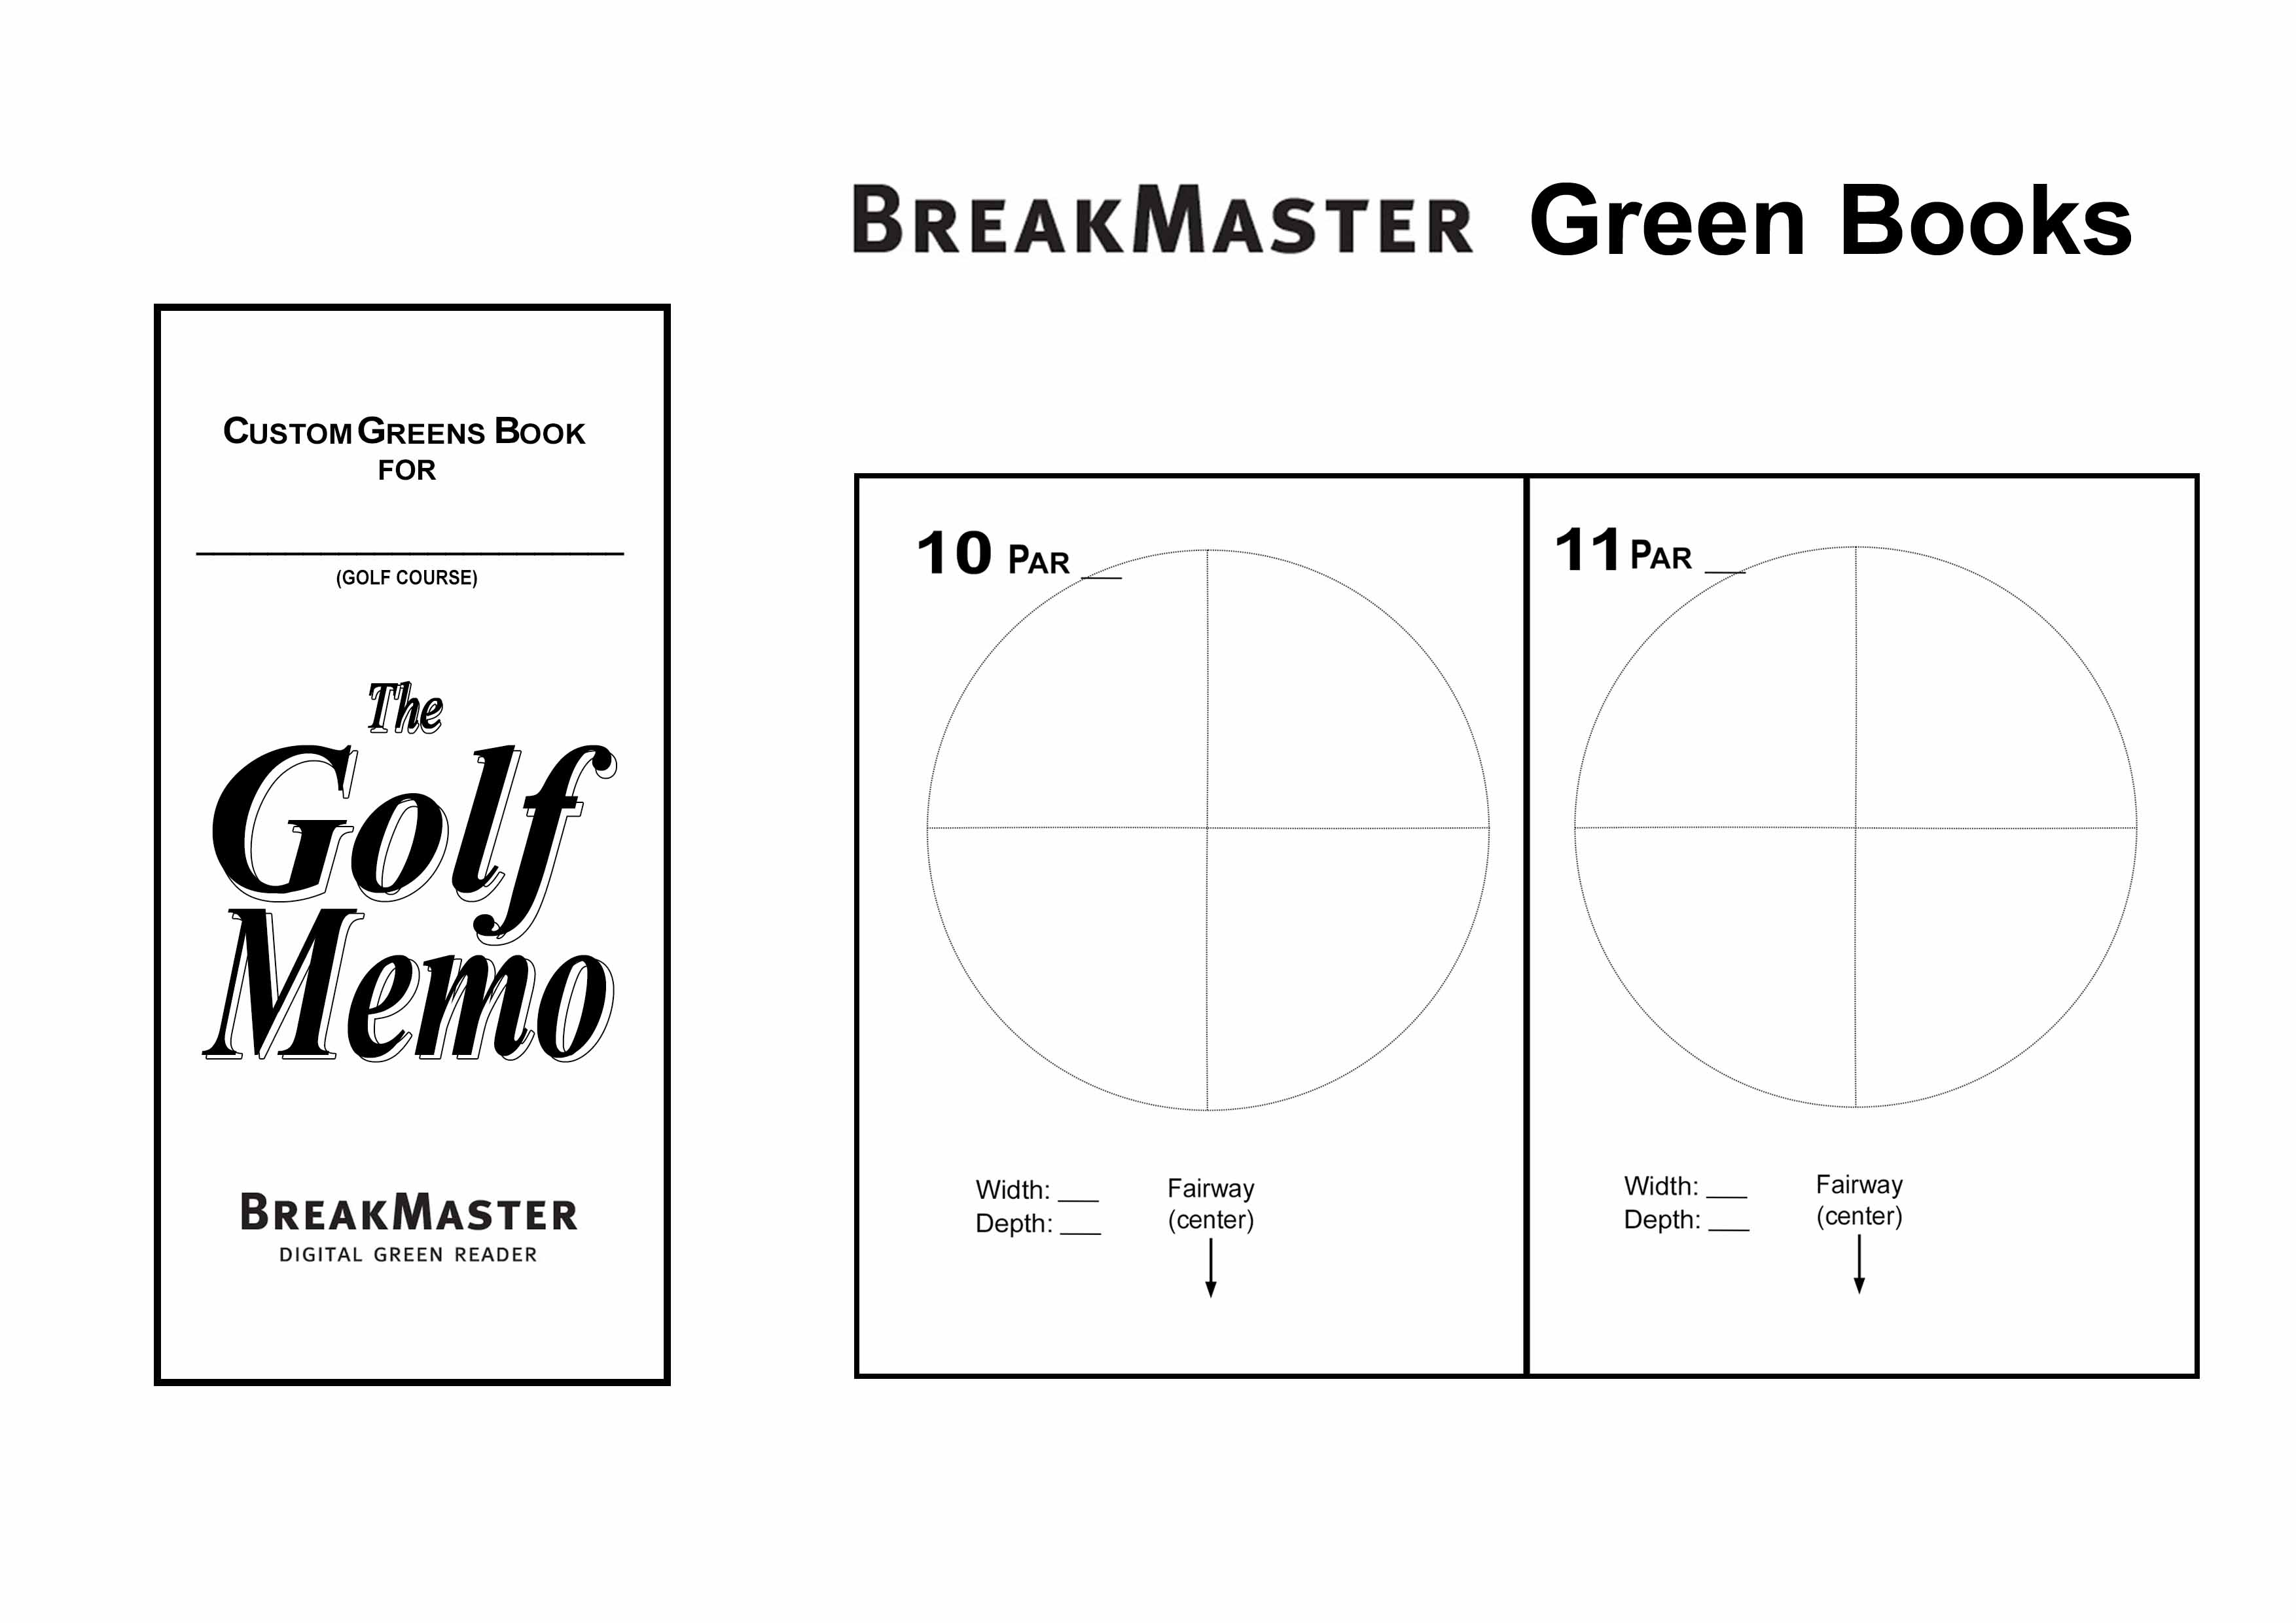 ゴルフで完璧を求める人のためのヤーデージブック ザ・ゴルフメモ The GOLF MEMO